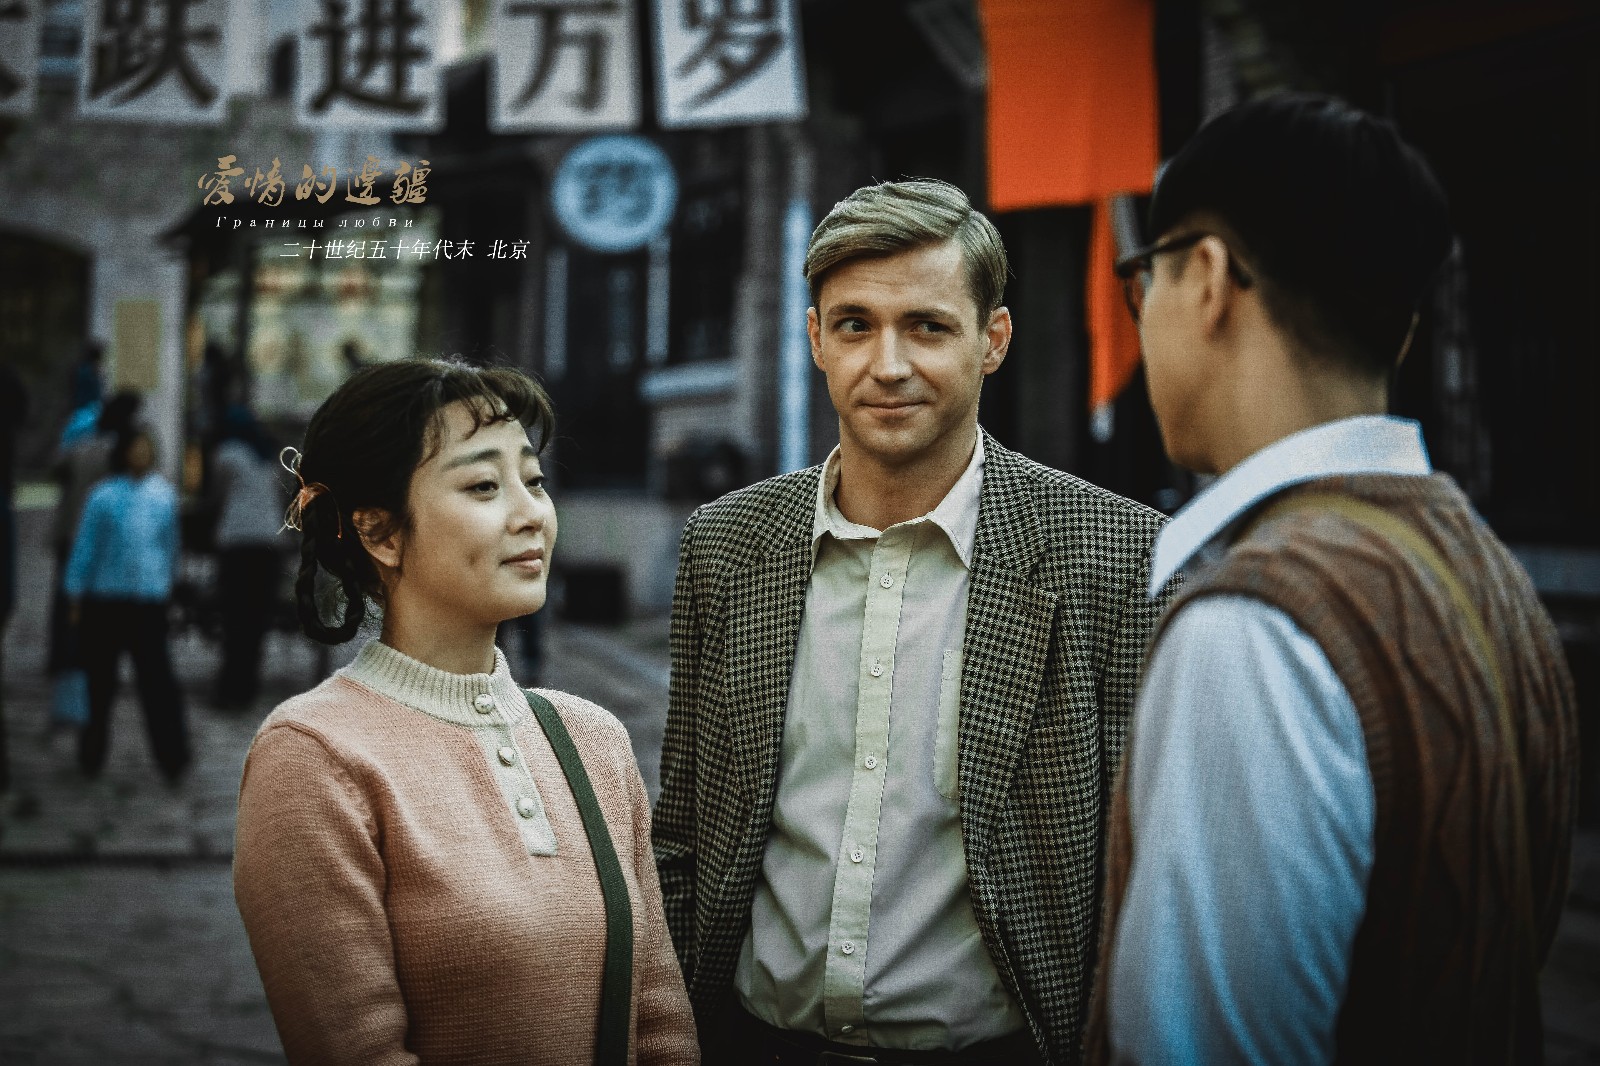 大文文上线《爱情的边疆》引关注 主演徐嘉雯是个敢闯的姑娘